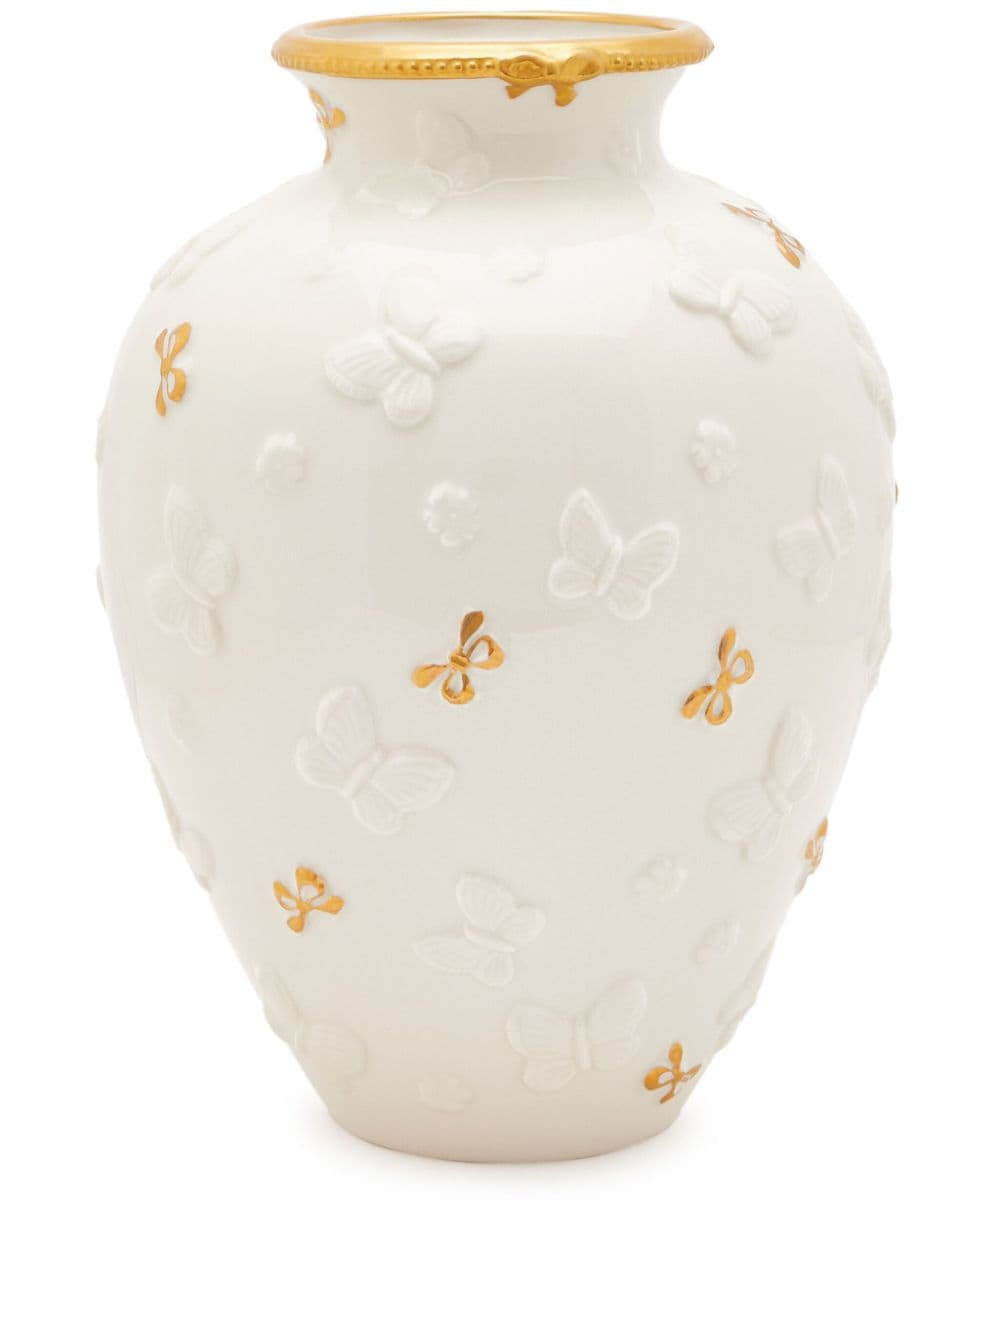 Villari Small Butterfly Porcelain Vase In White